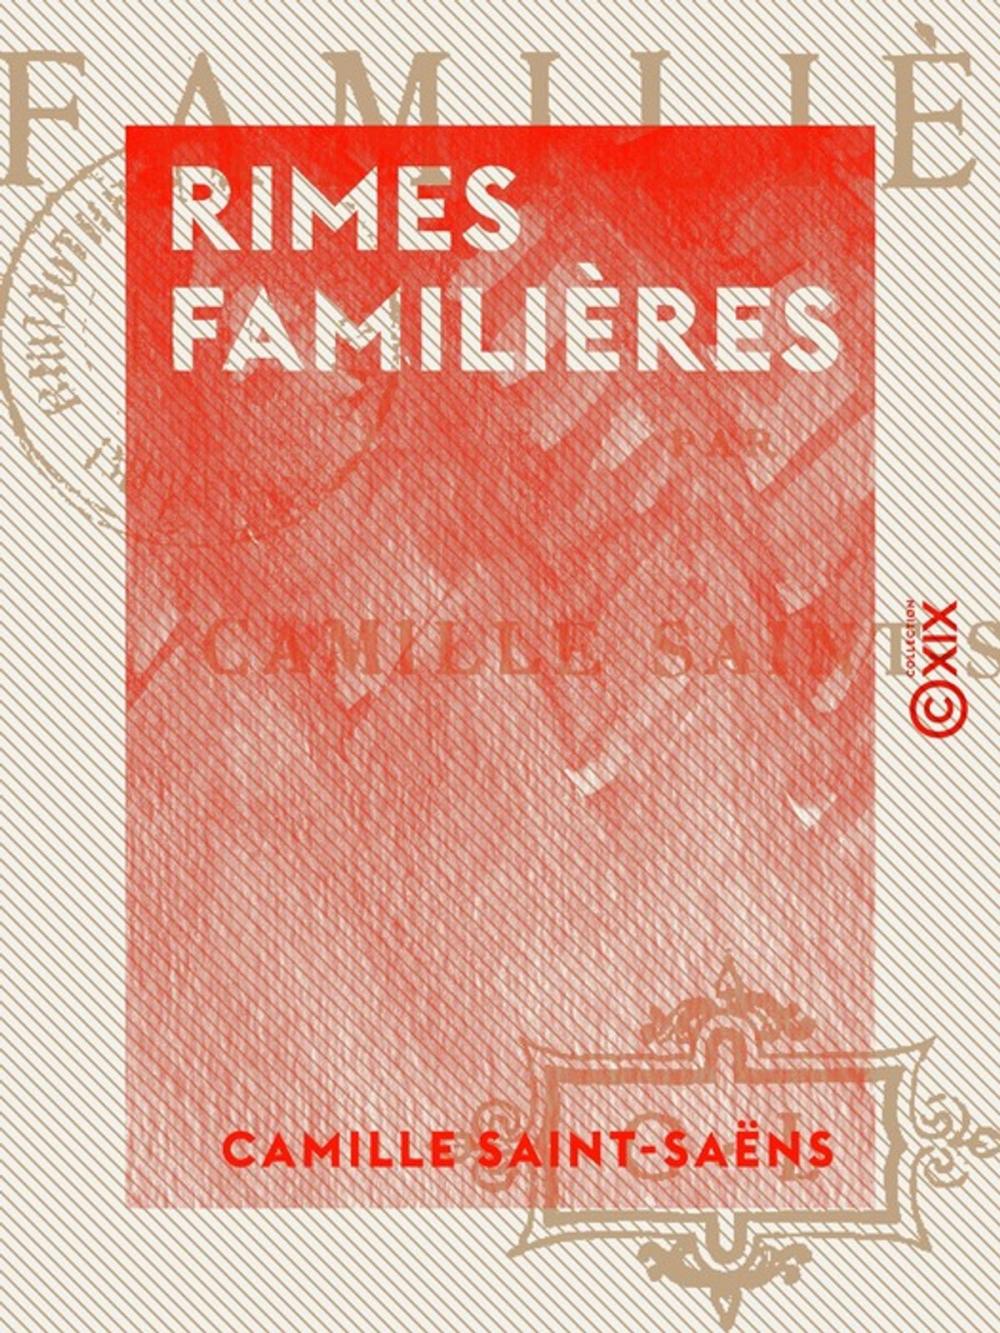 Big bigCover of Rimes familières